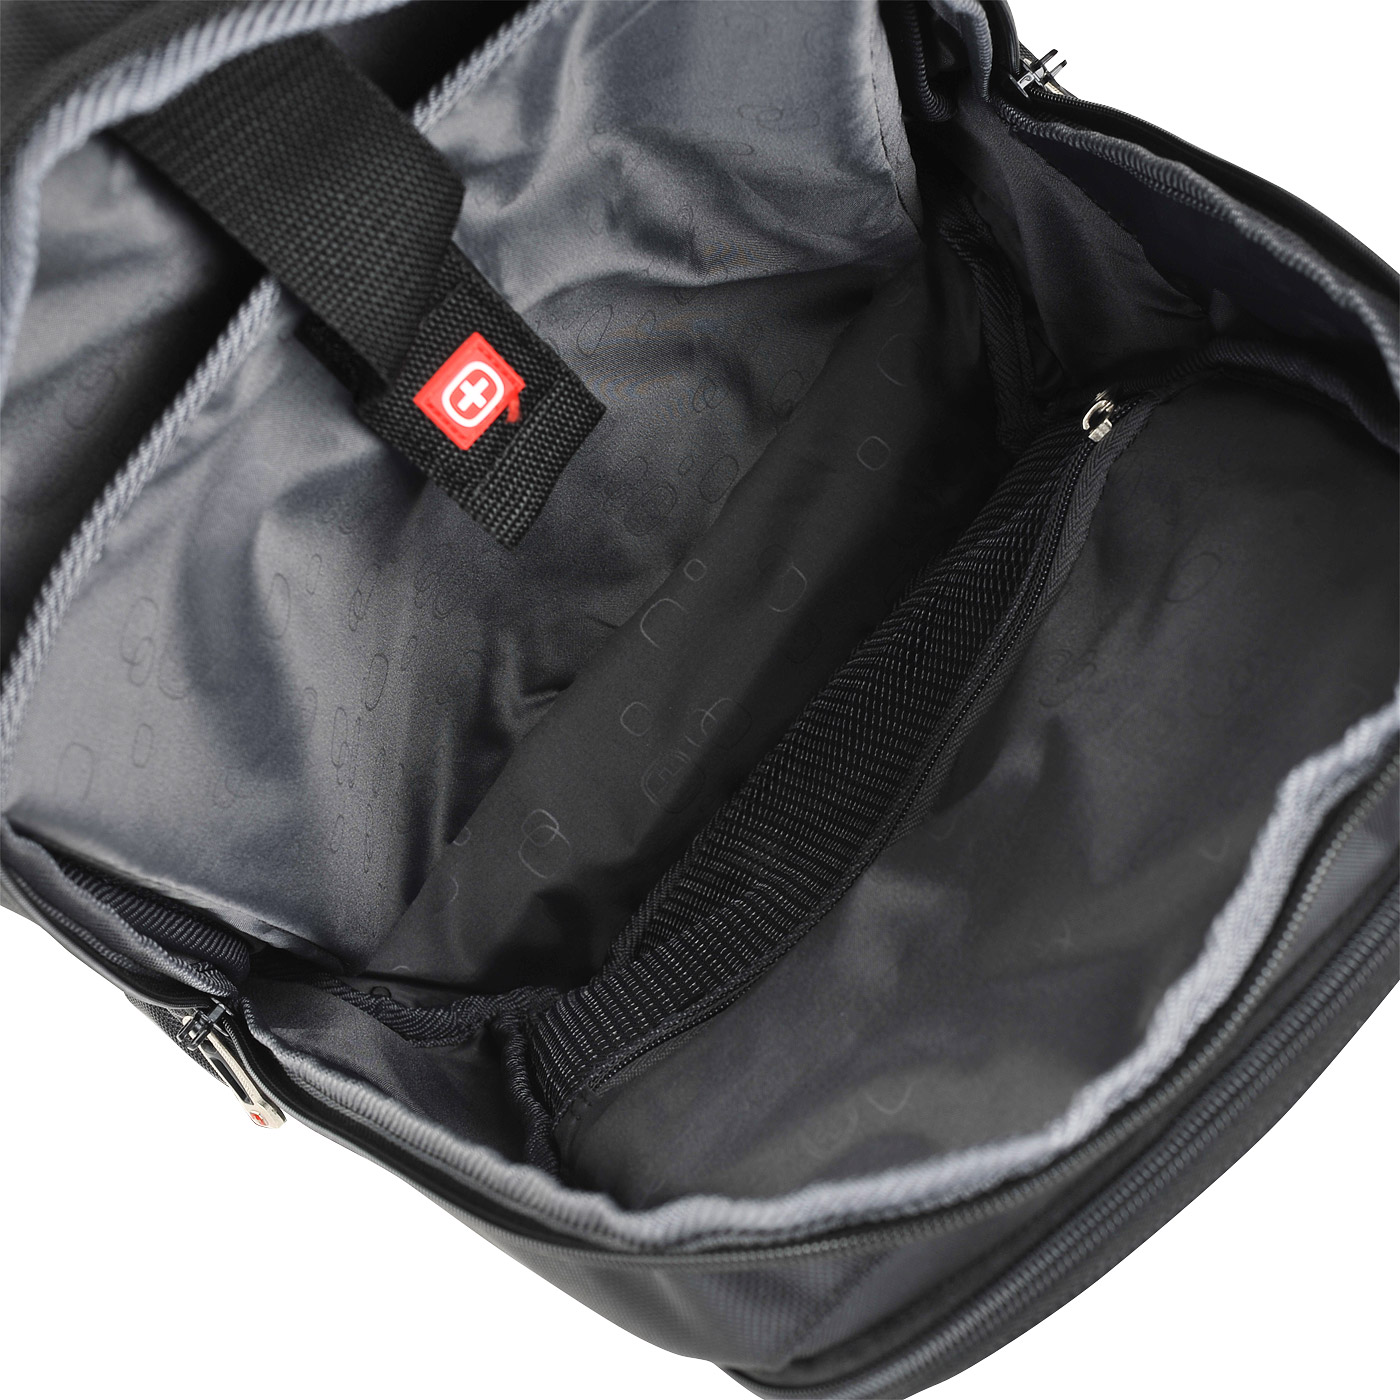 Тканевый рюкзак Wenger 